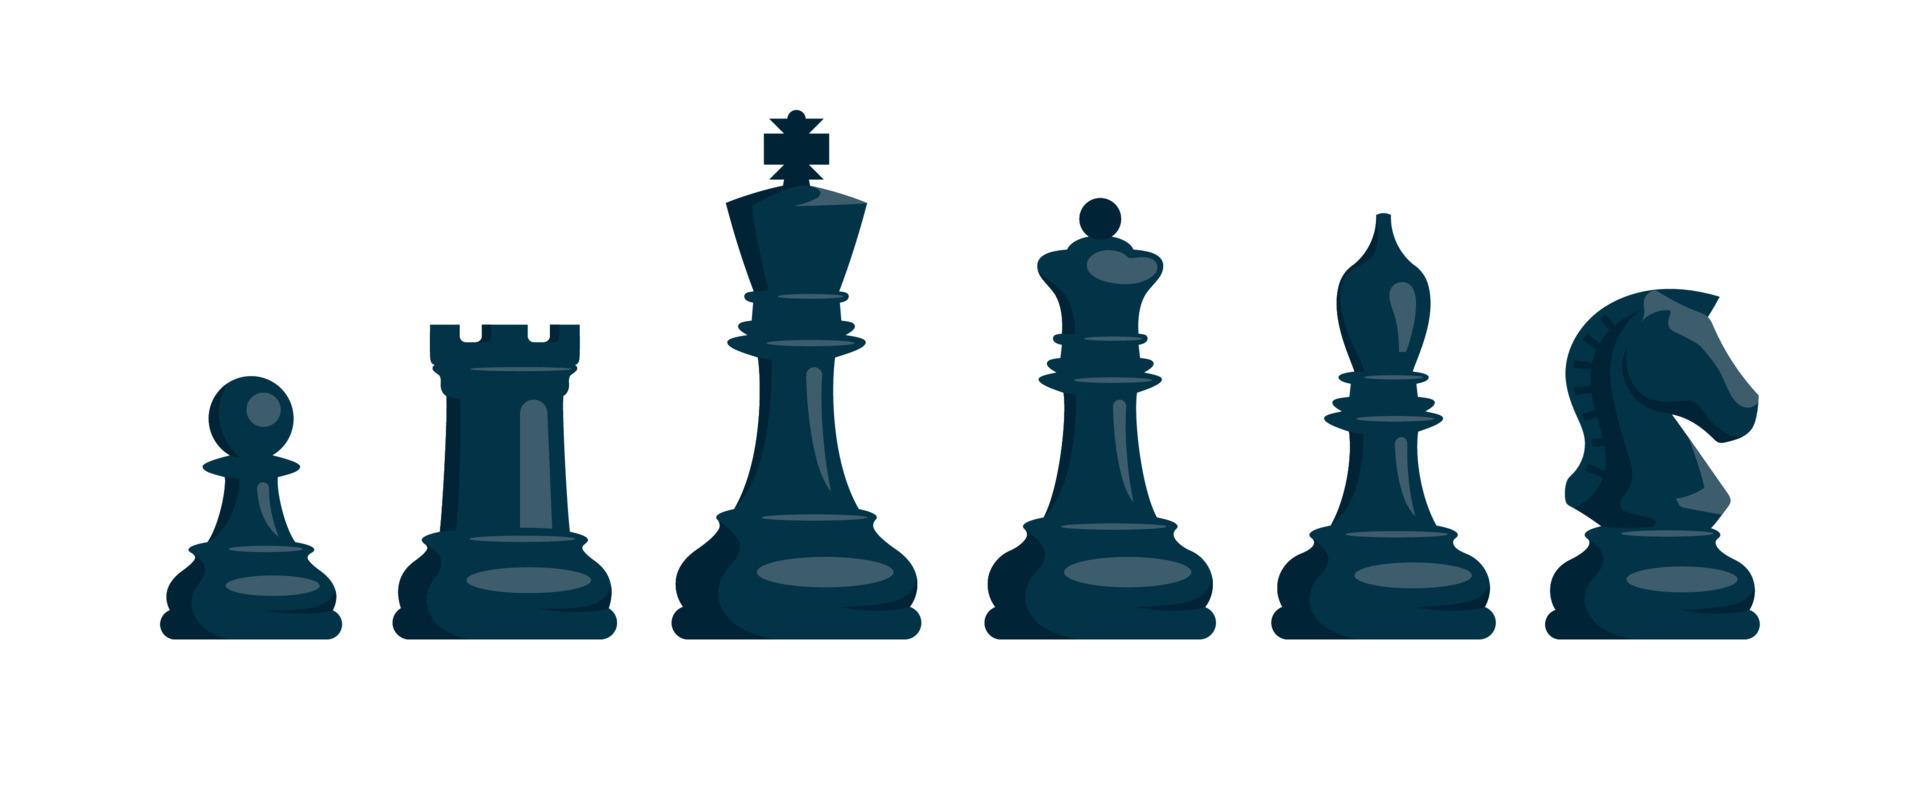 xadrez. conjunto de peças de xadrez preto. cavalo, torre, peão, bispo, rei,  rainha. imagem vetorial. 9173309 Vetor no Vecteezy